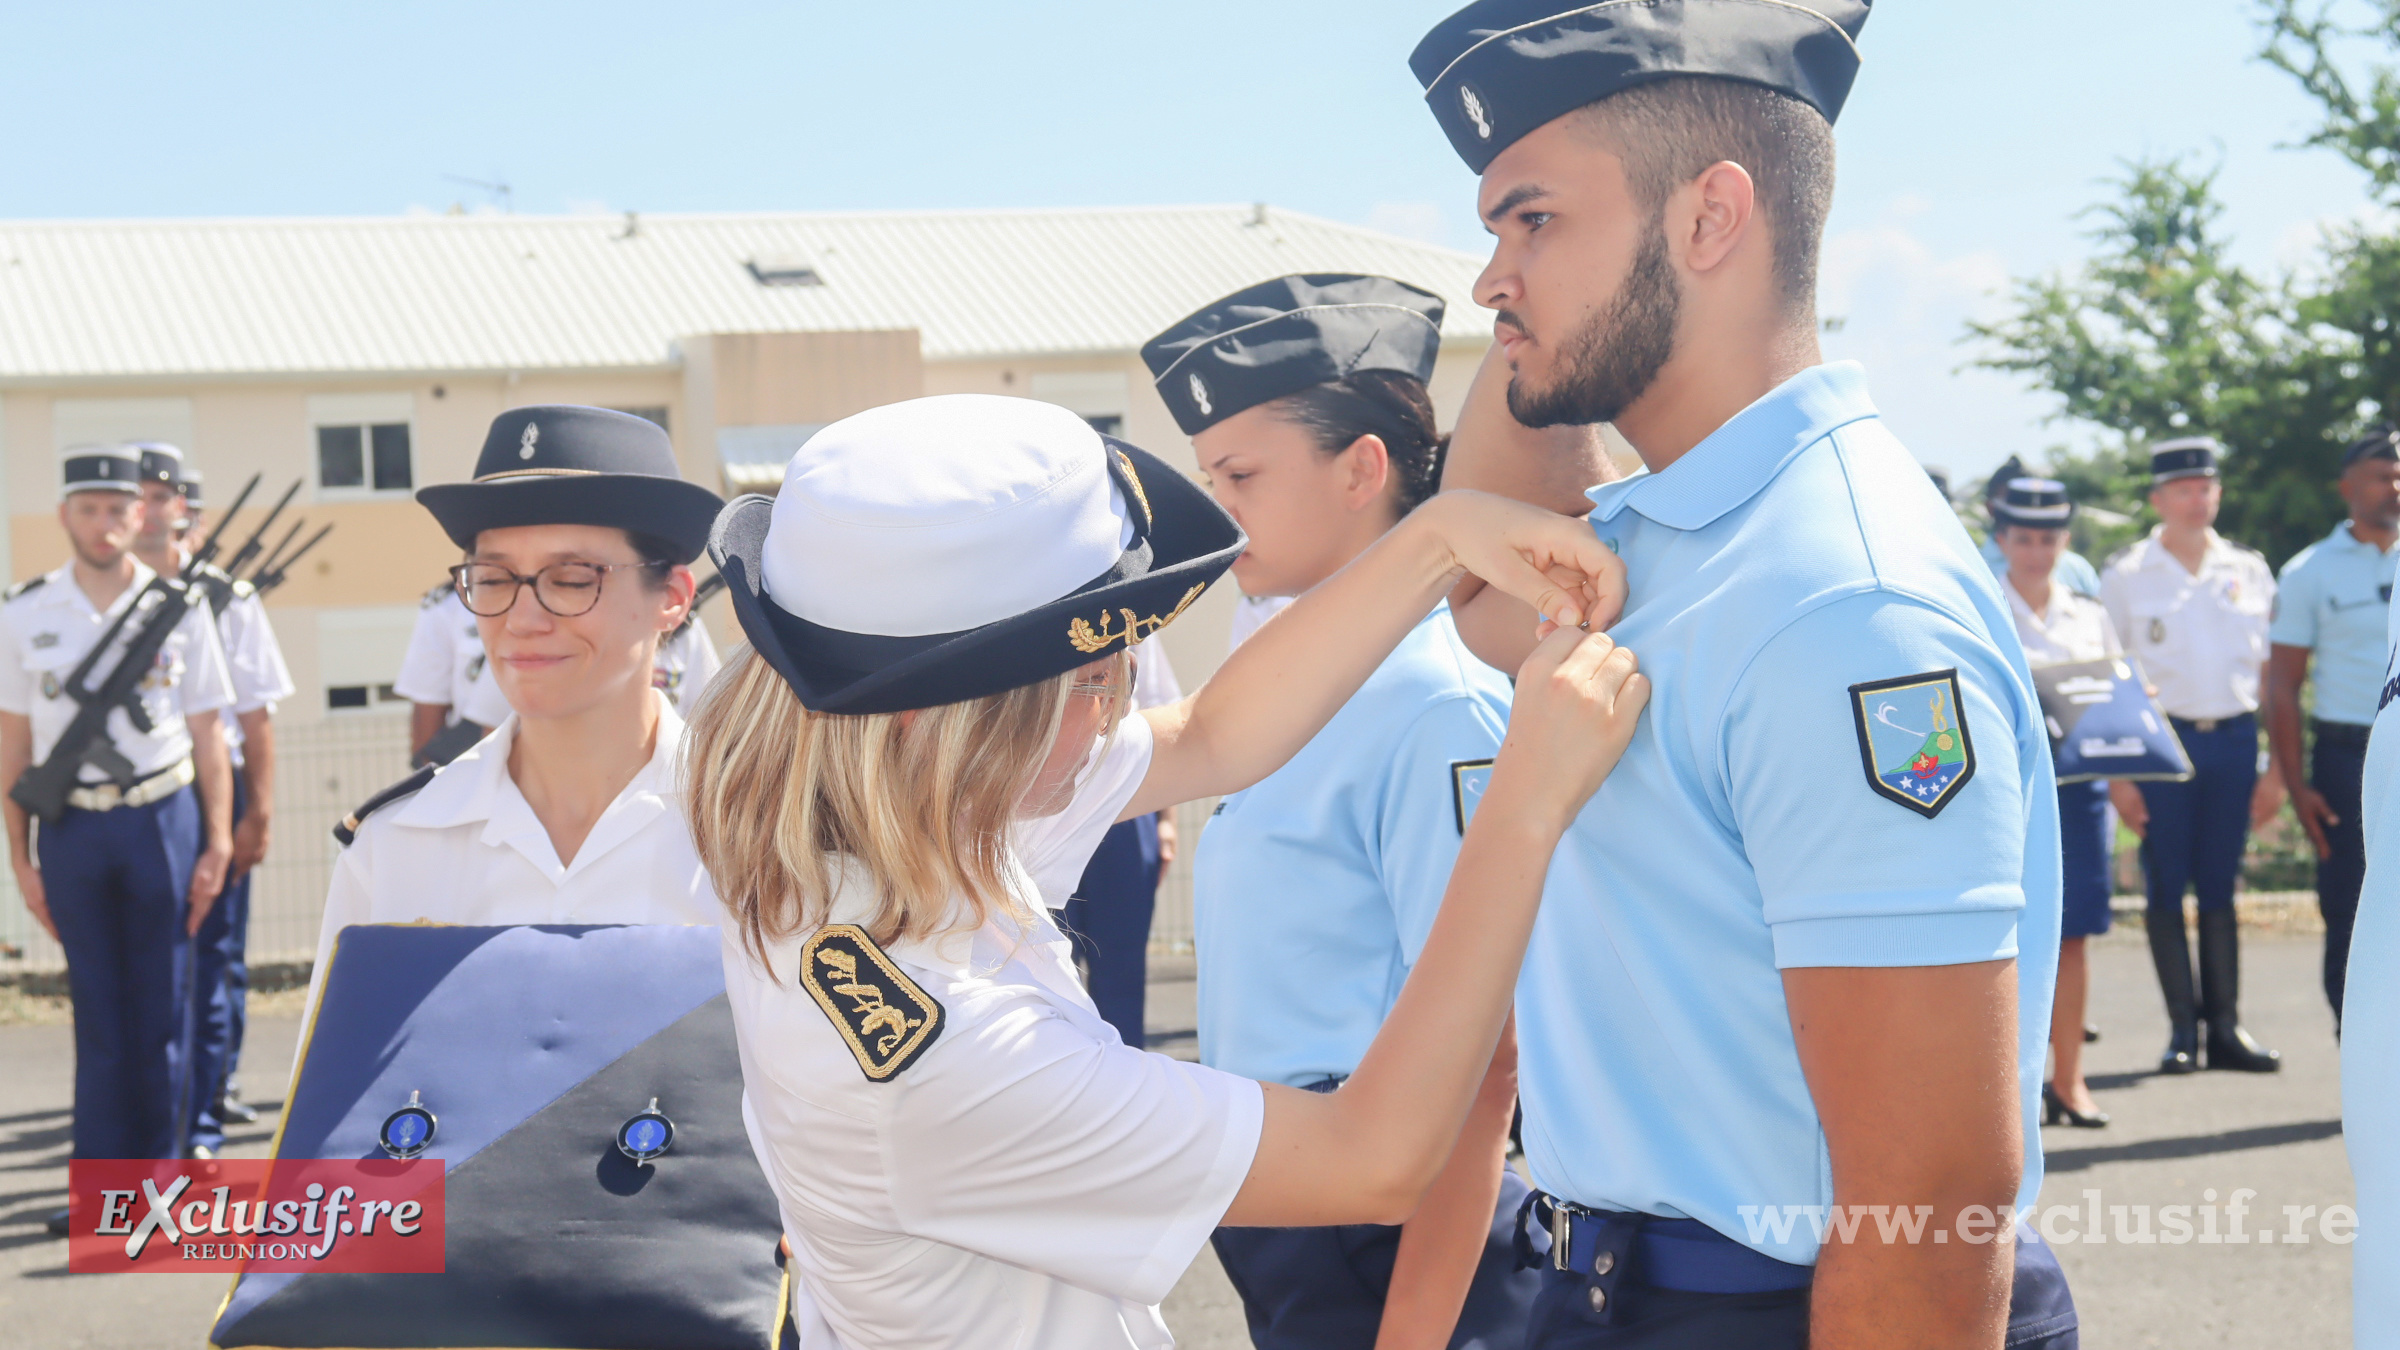 Cérémonie de fin de formation pour la Préparation Militaire Gendarmerie: photos